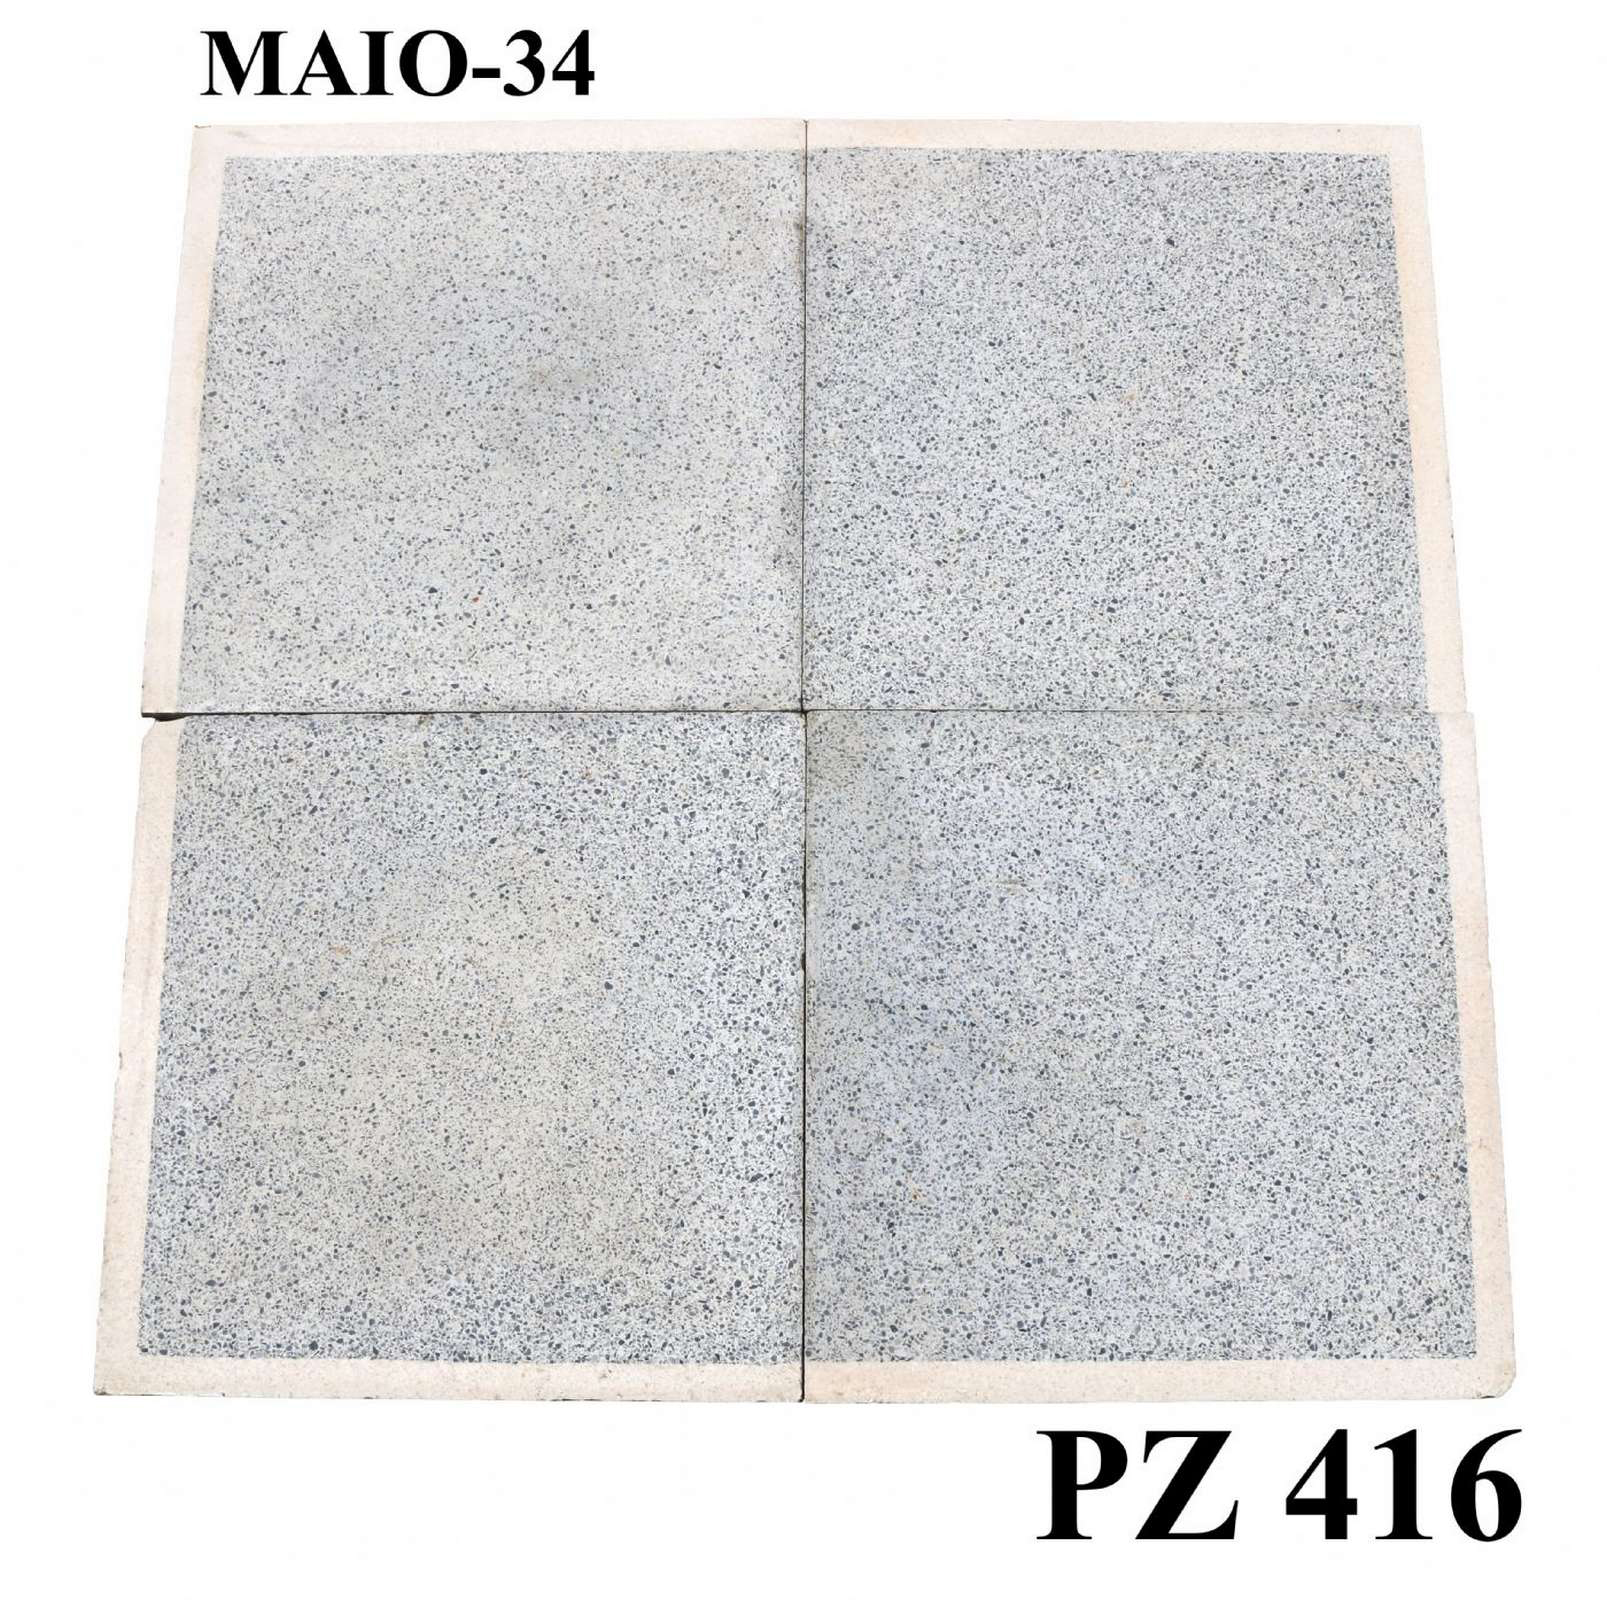 Antica pavimentazione in graniglia. cm 33x33. - Cementine e Graniglie - Pavimentazioni Antiche - Prodotti - Antichità Fiorillo